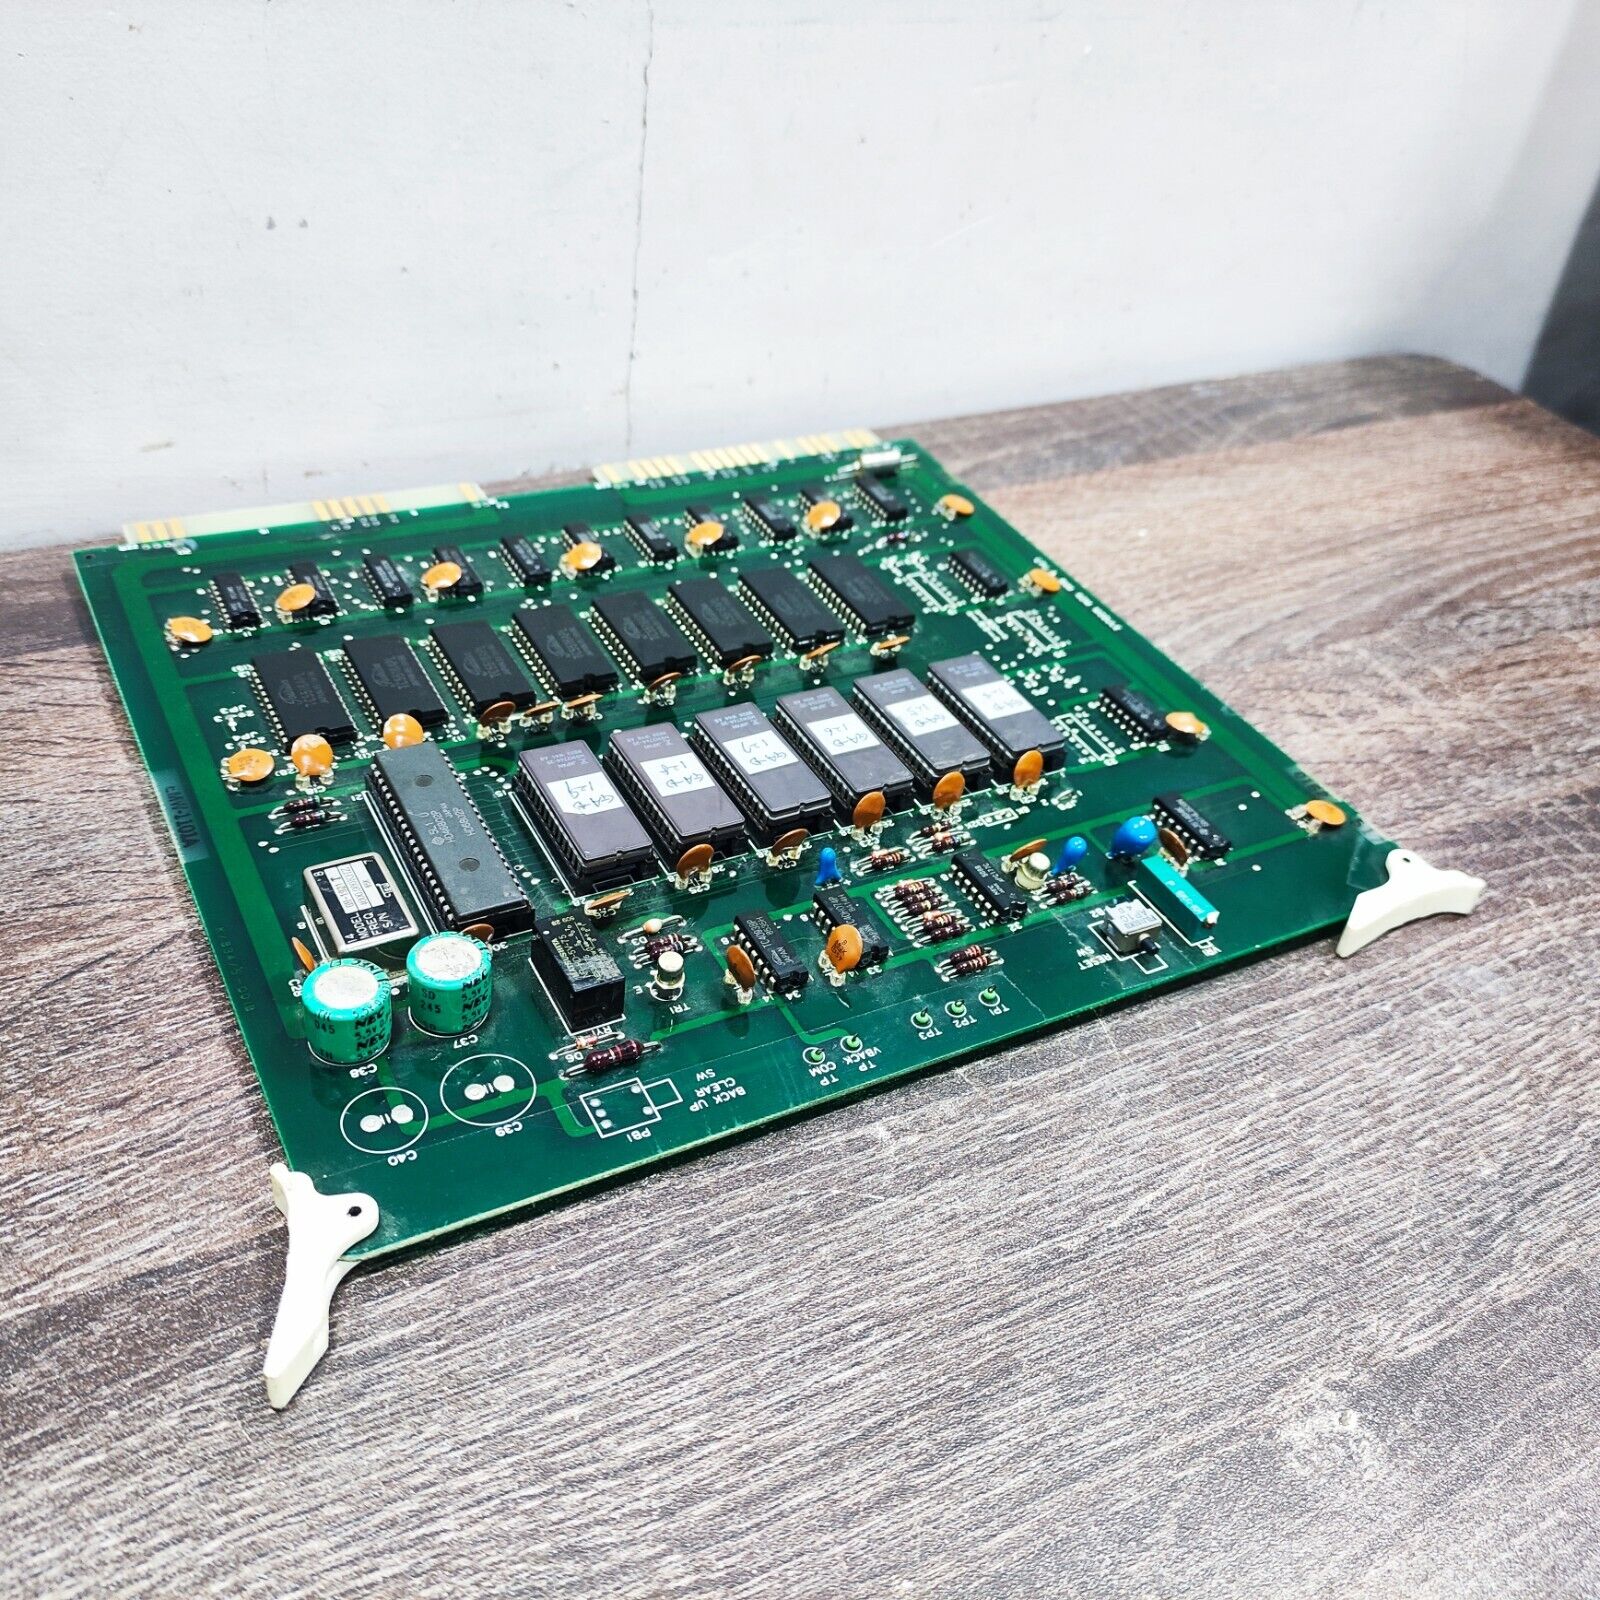 TERASAKI EMW-1101A K/834/5-001B CPU RAM & ROM MODULE